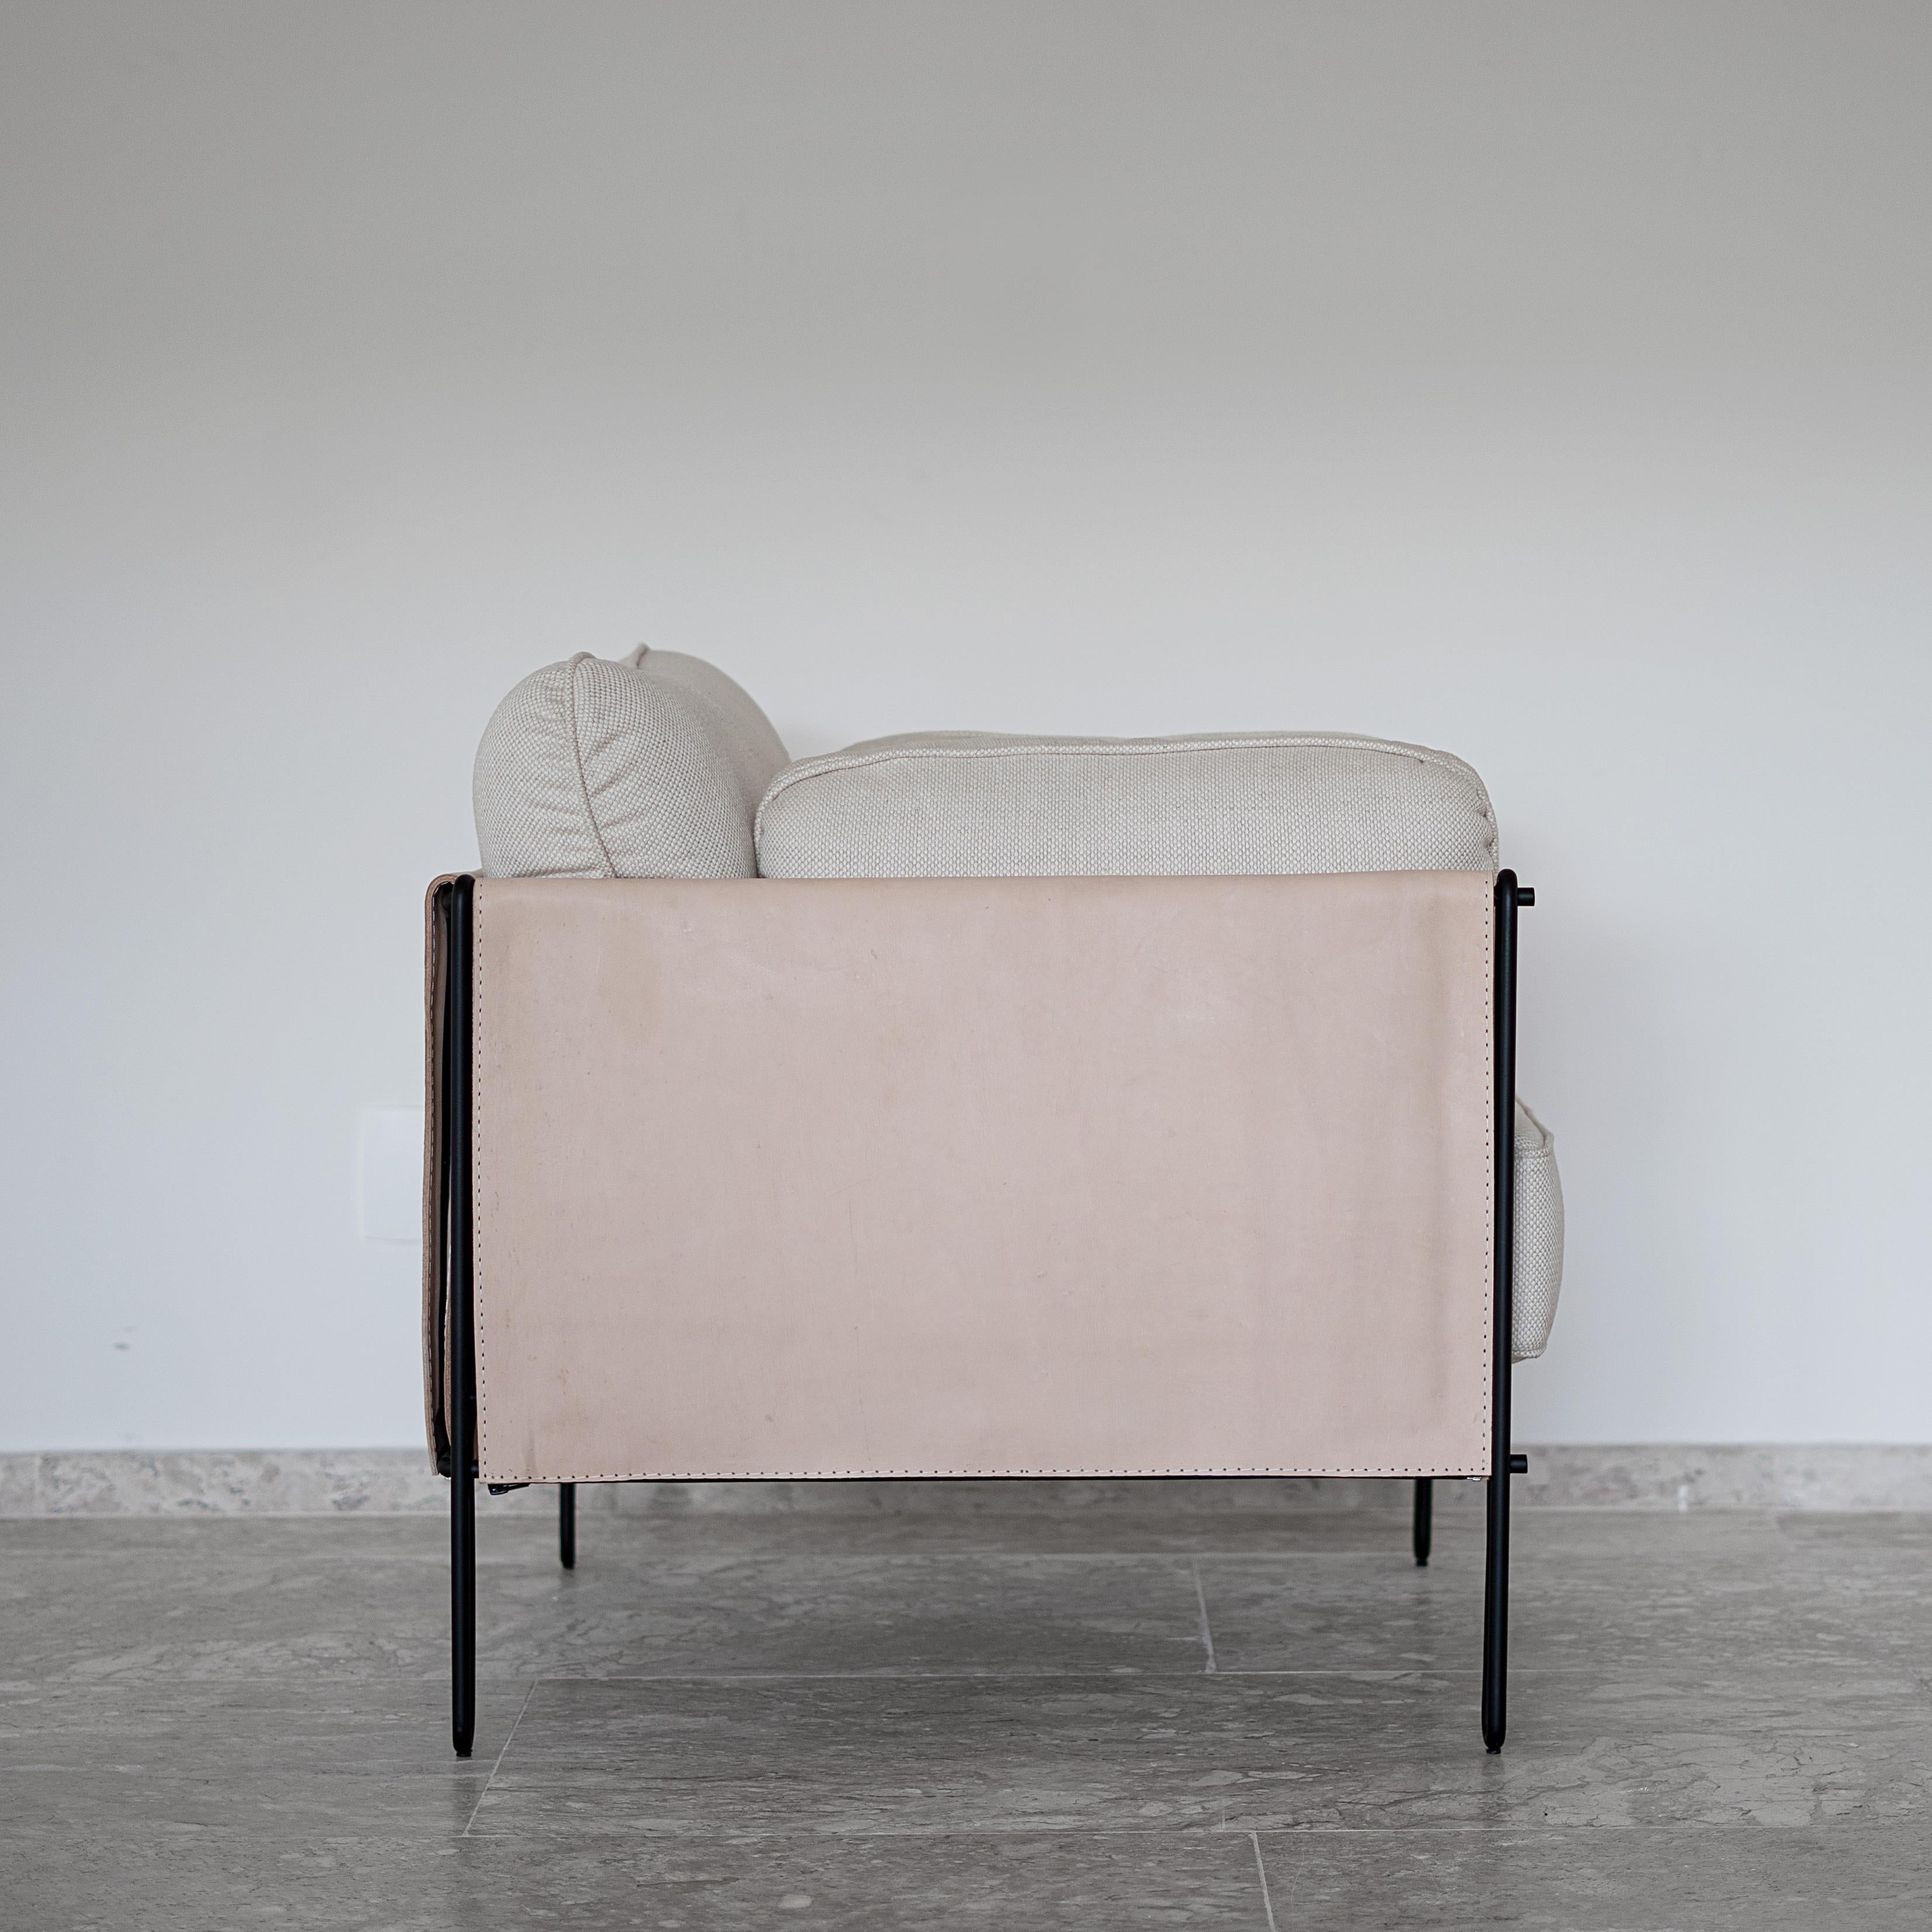 Ce fauteuil minimaliste primé, en acier et cuir, est conçu dans un raisonnement géométrique et architétonique. La légèreté est garantie par la délicate structure en fer qui repose délicatement sur le sol. La structure est doublée de cuir robuste et